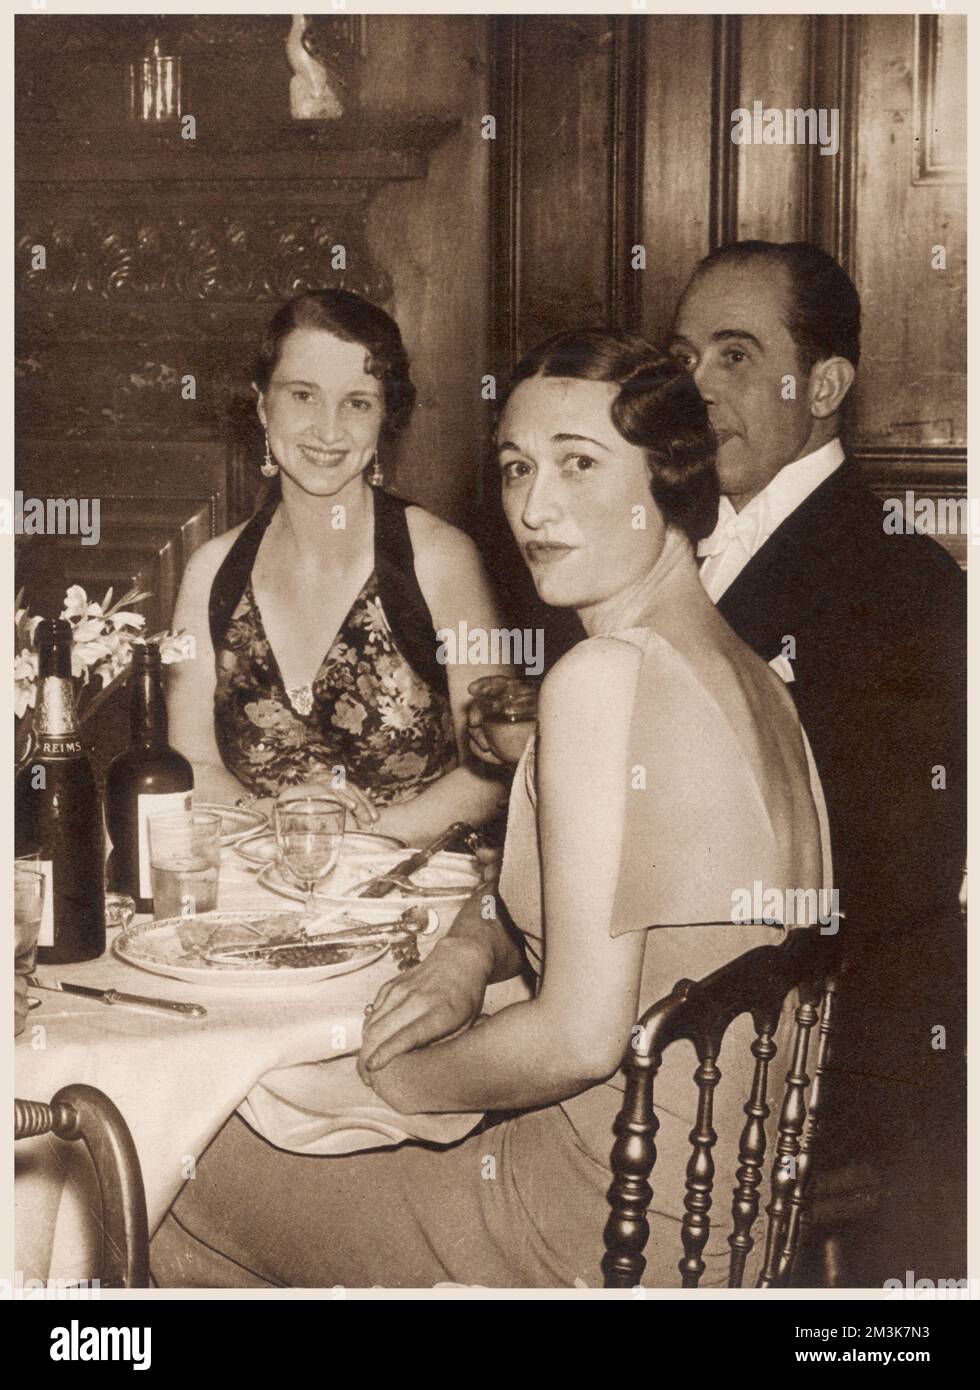 Wallis Simpson lors d'un dîner à Londres, 1936. Wallis Simpson (1896 - 1986), la duchesse de Windsor épousa le prince de Galles en 1937, après avoir abdiqué le trône. 1936 Banque D'Images